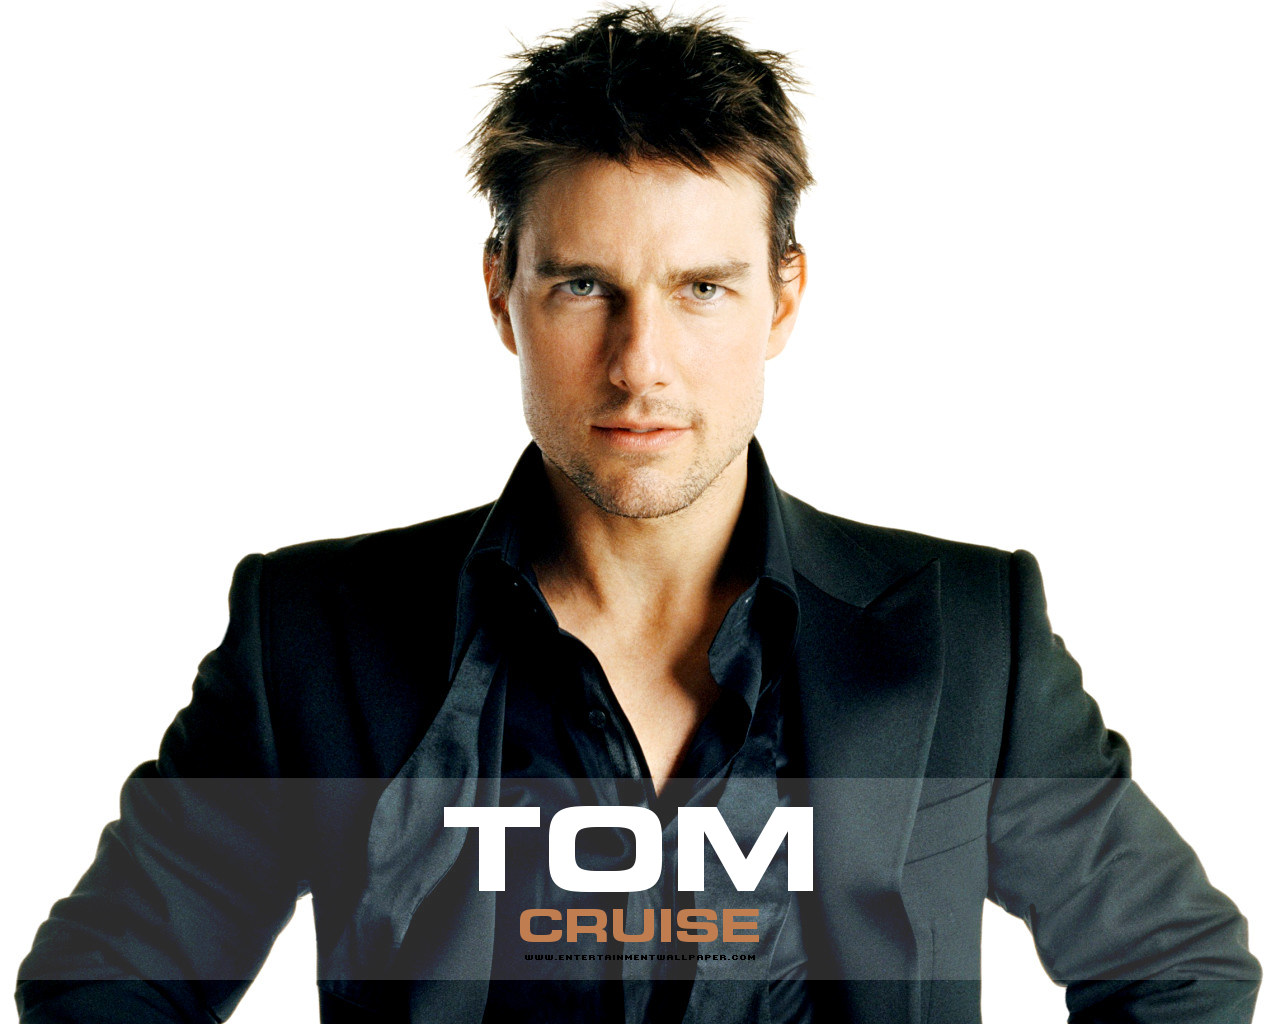 http://1.bp.blogspot.com/-z684kfQgy2o/UFLTUeJcfYI/AAAAAAAABuA/znlt49df8DM/s1600/Tom+Cruise+Official.jpg